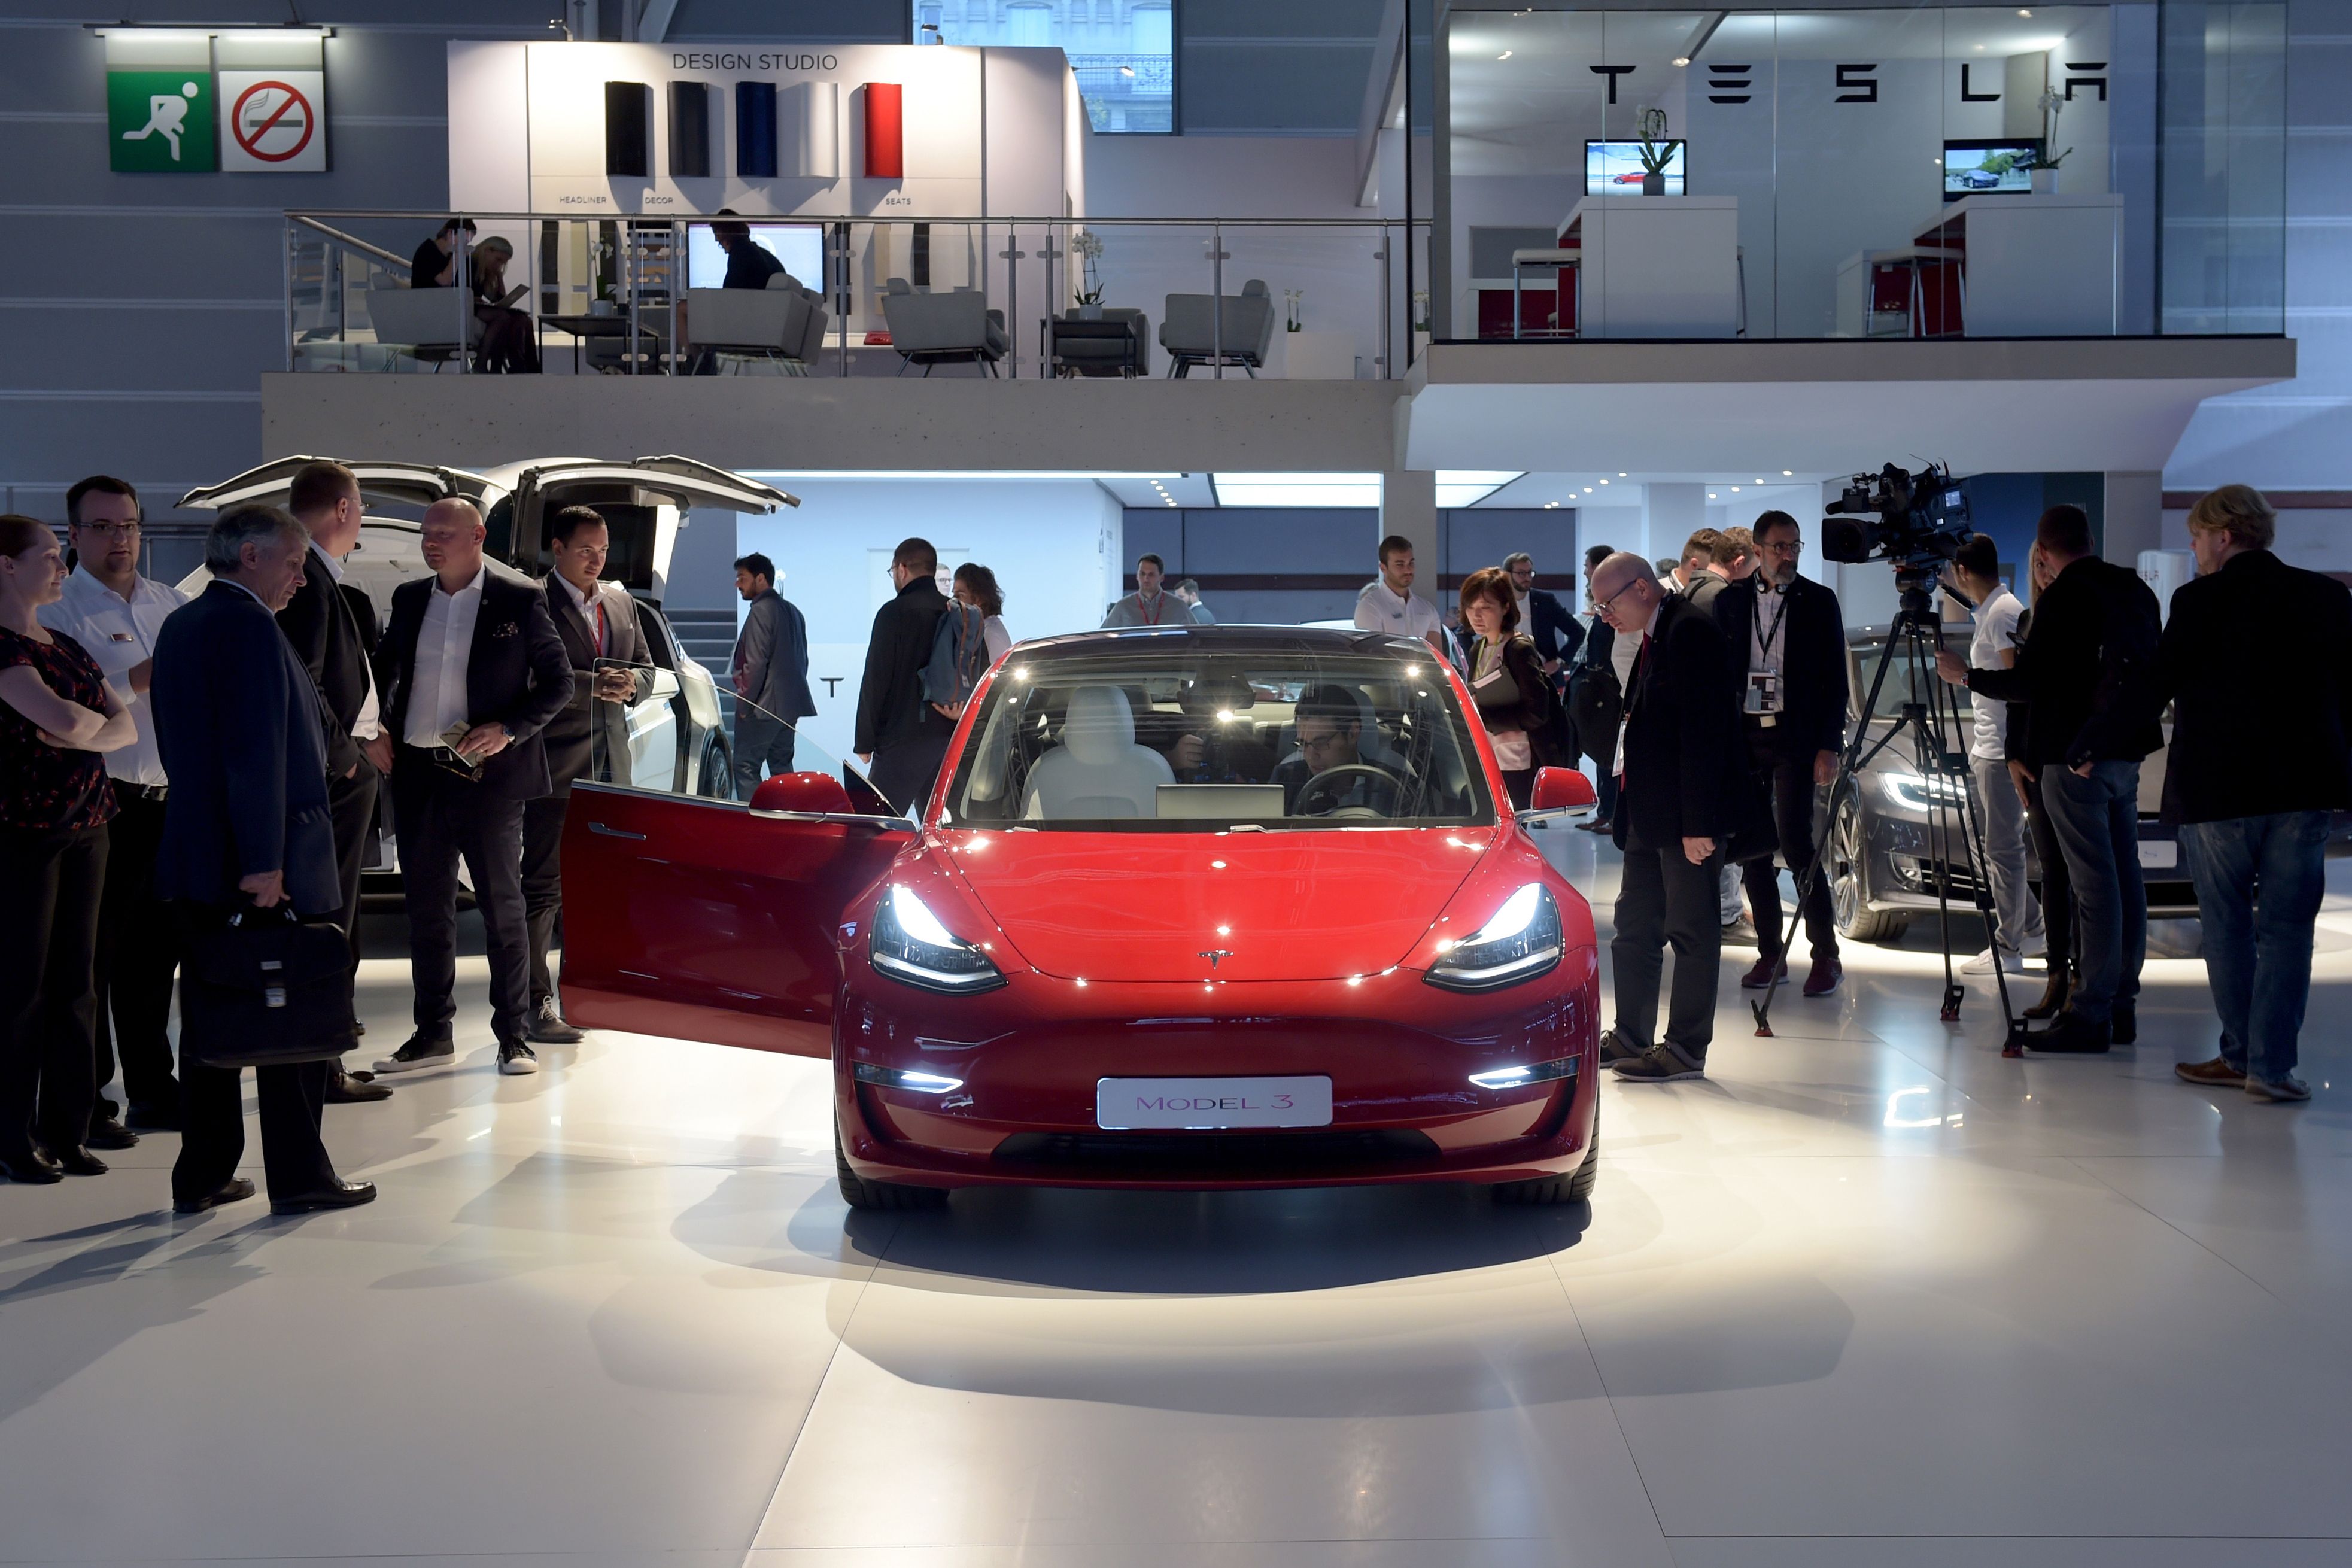 US regulators take aim at Tesla over Model 3 safety claims